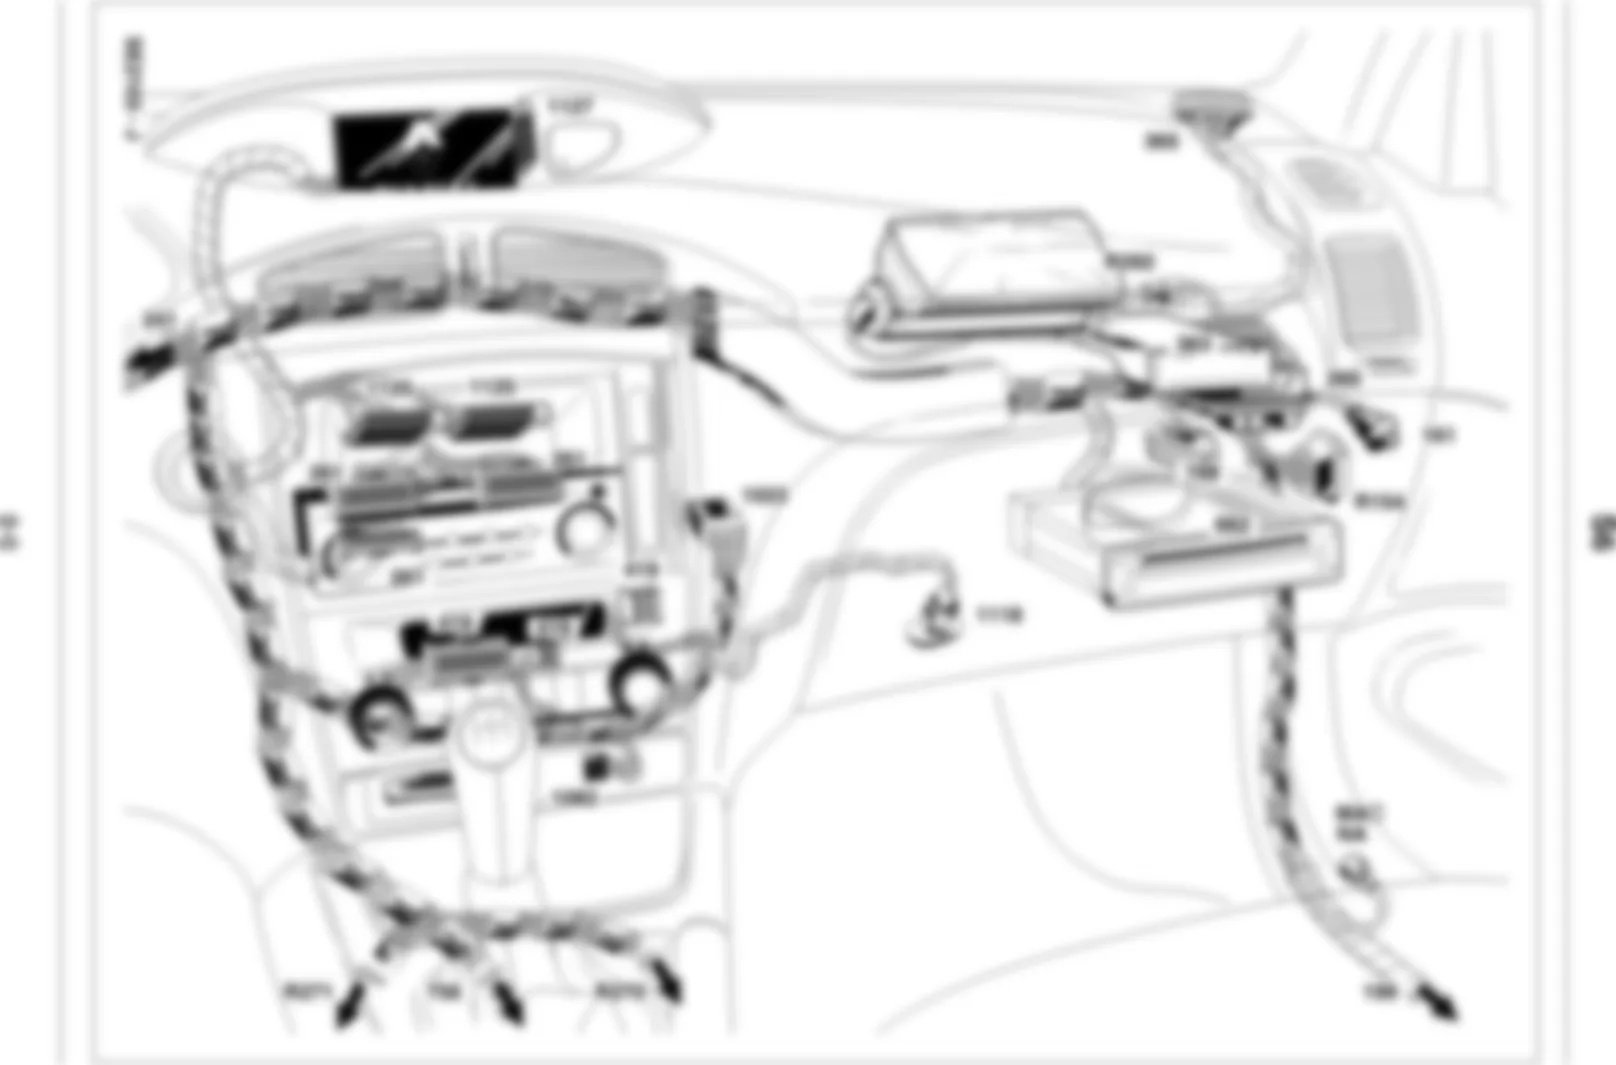 Где находится 1125 - ЦЕНТРАЛЬНЫЙ КОММУНИКАЦИОННЫЙ БЛОК для Renault Laguna II 2001-2008 2001-01-22